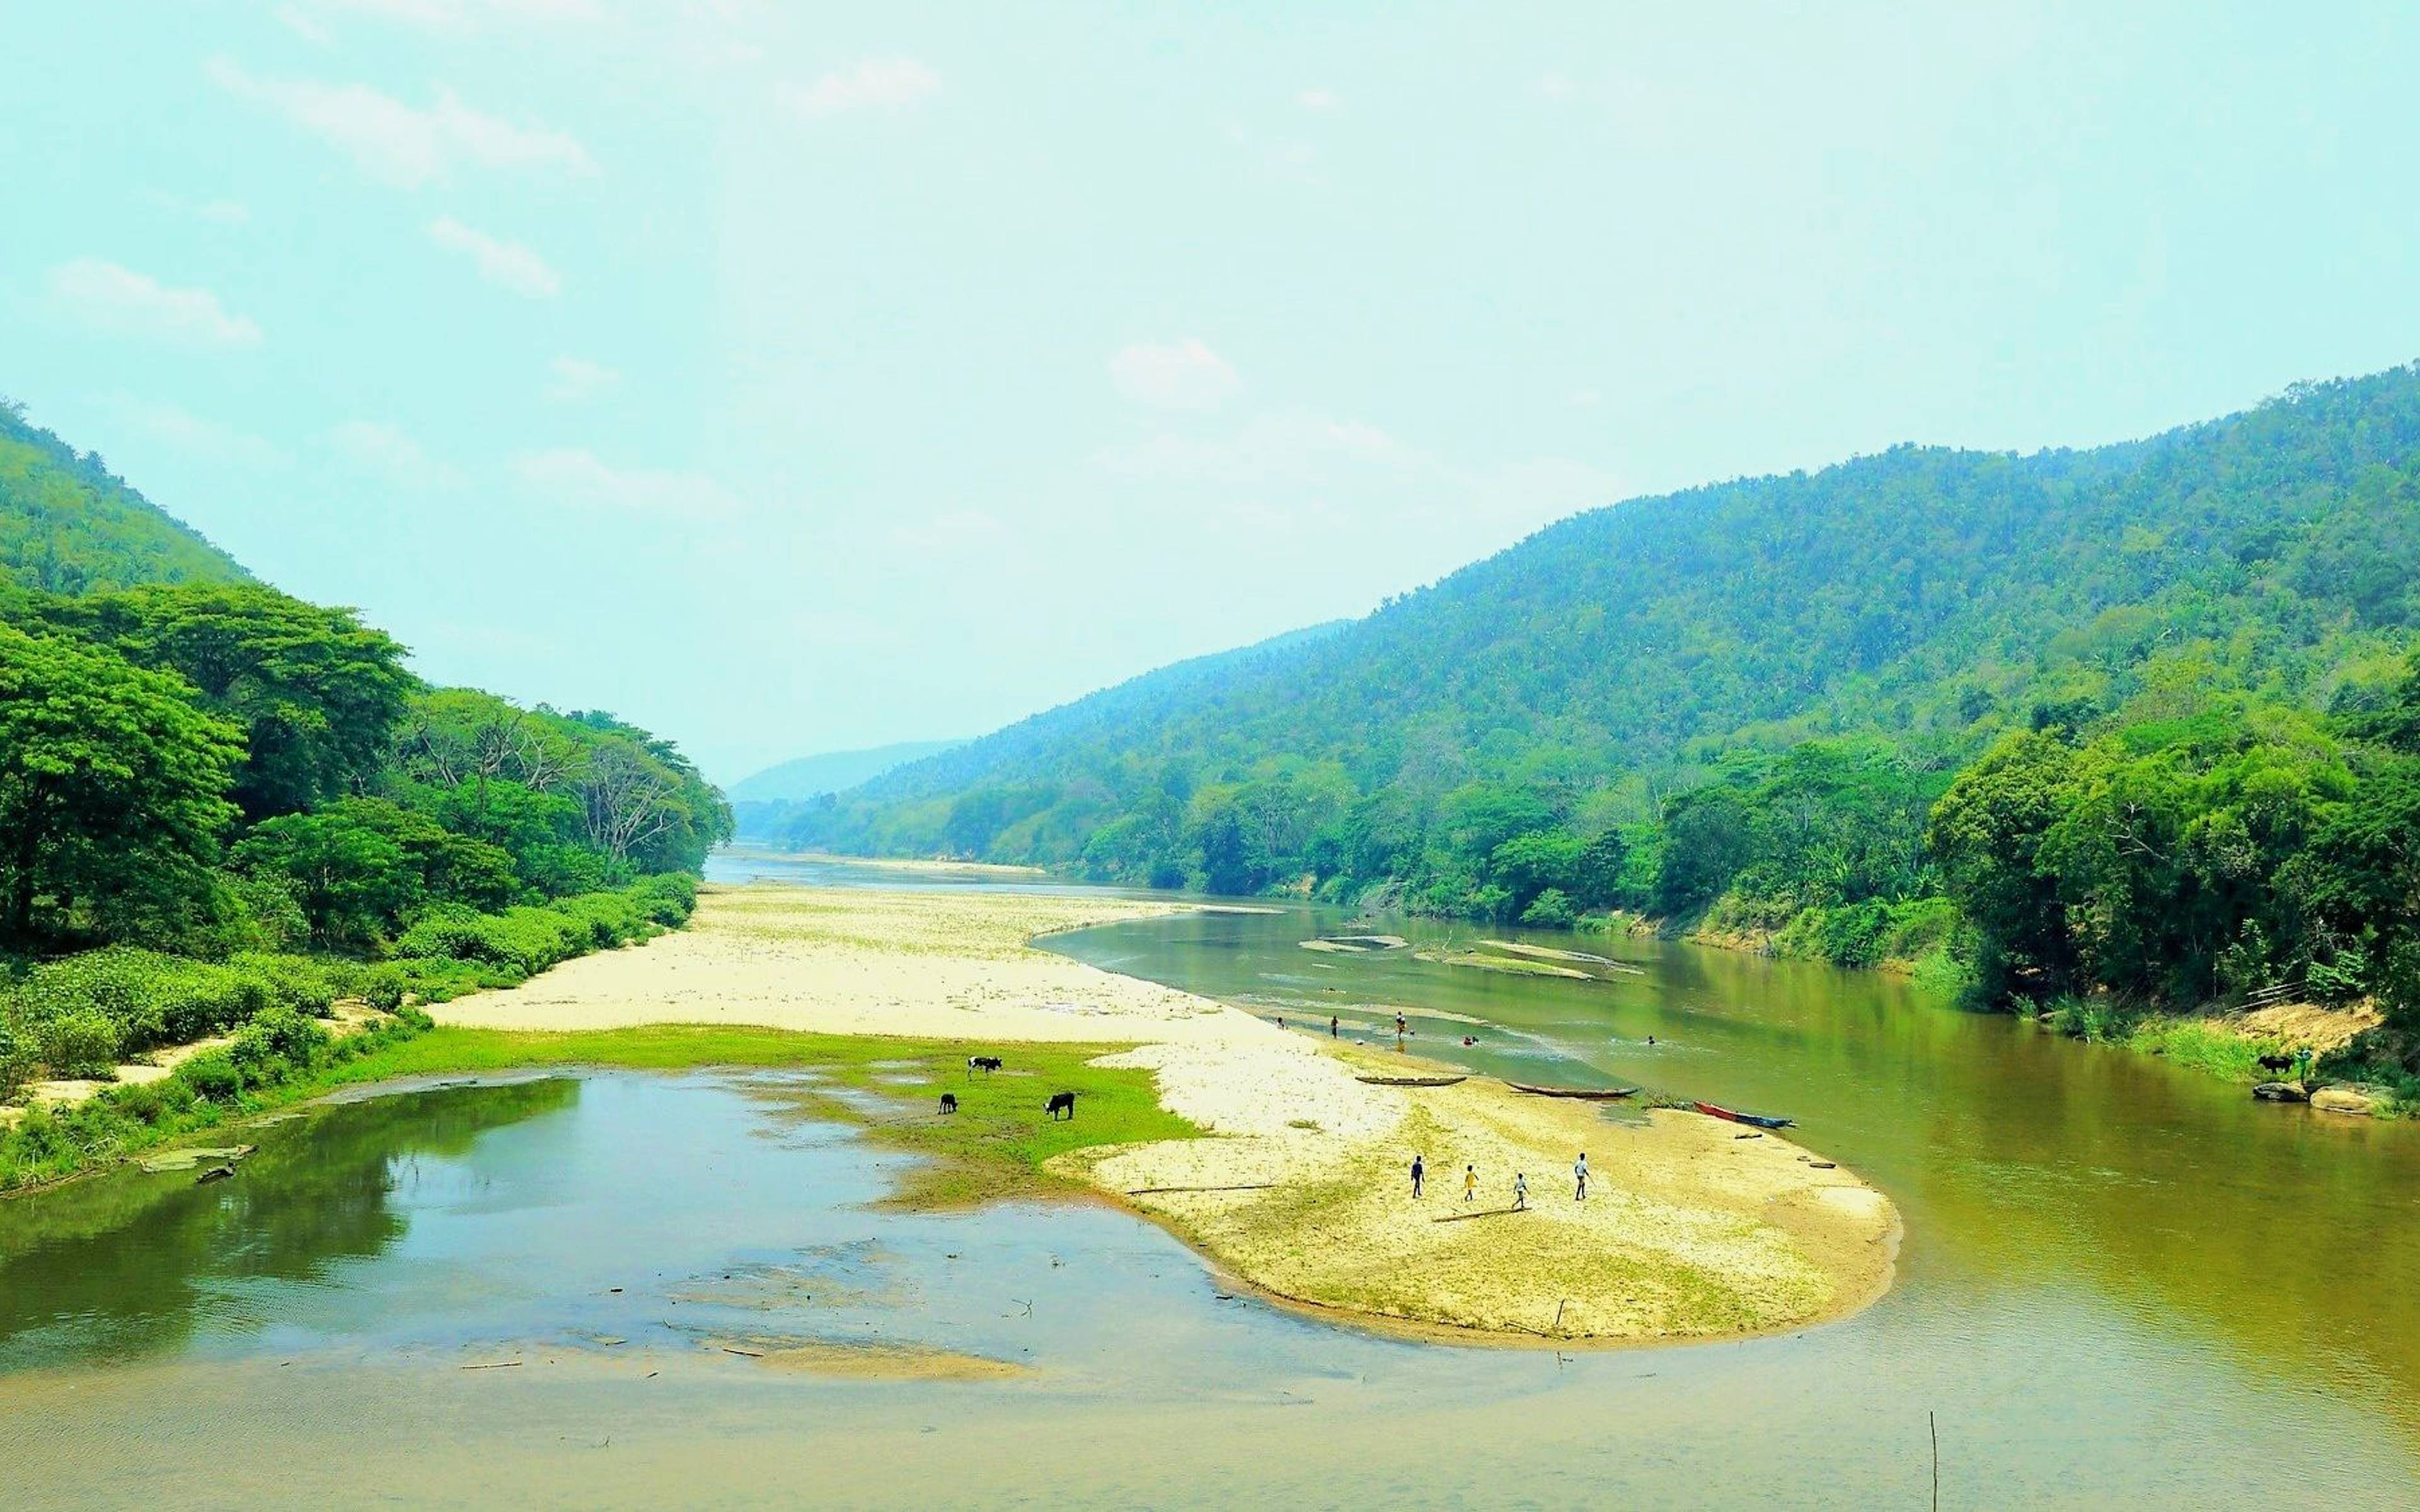 Il fiume Ramena in piroga ed il villaggio di Ambobaka